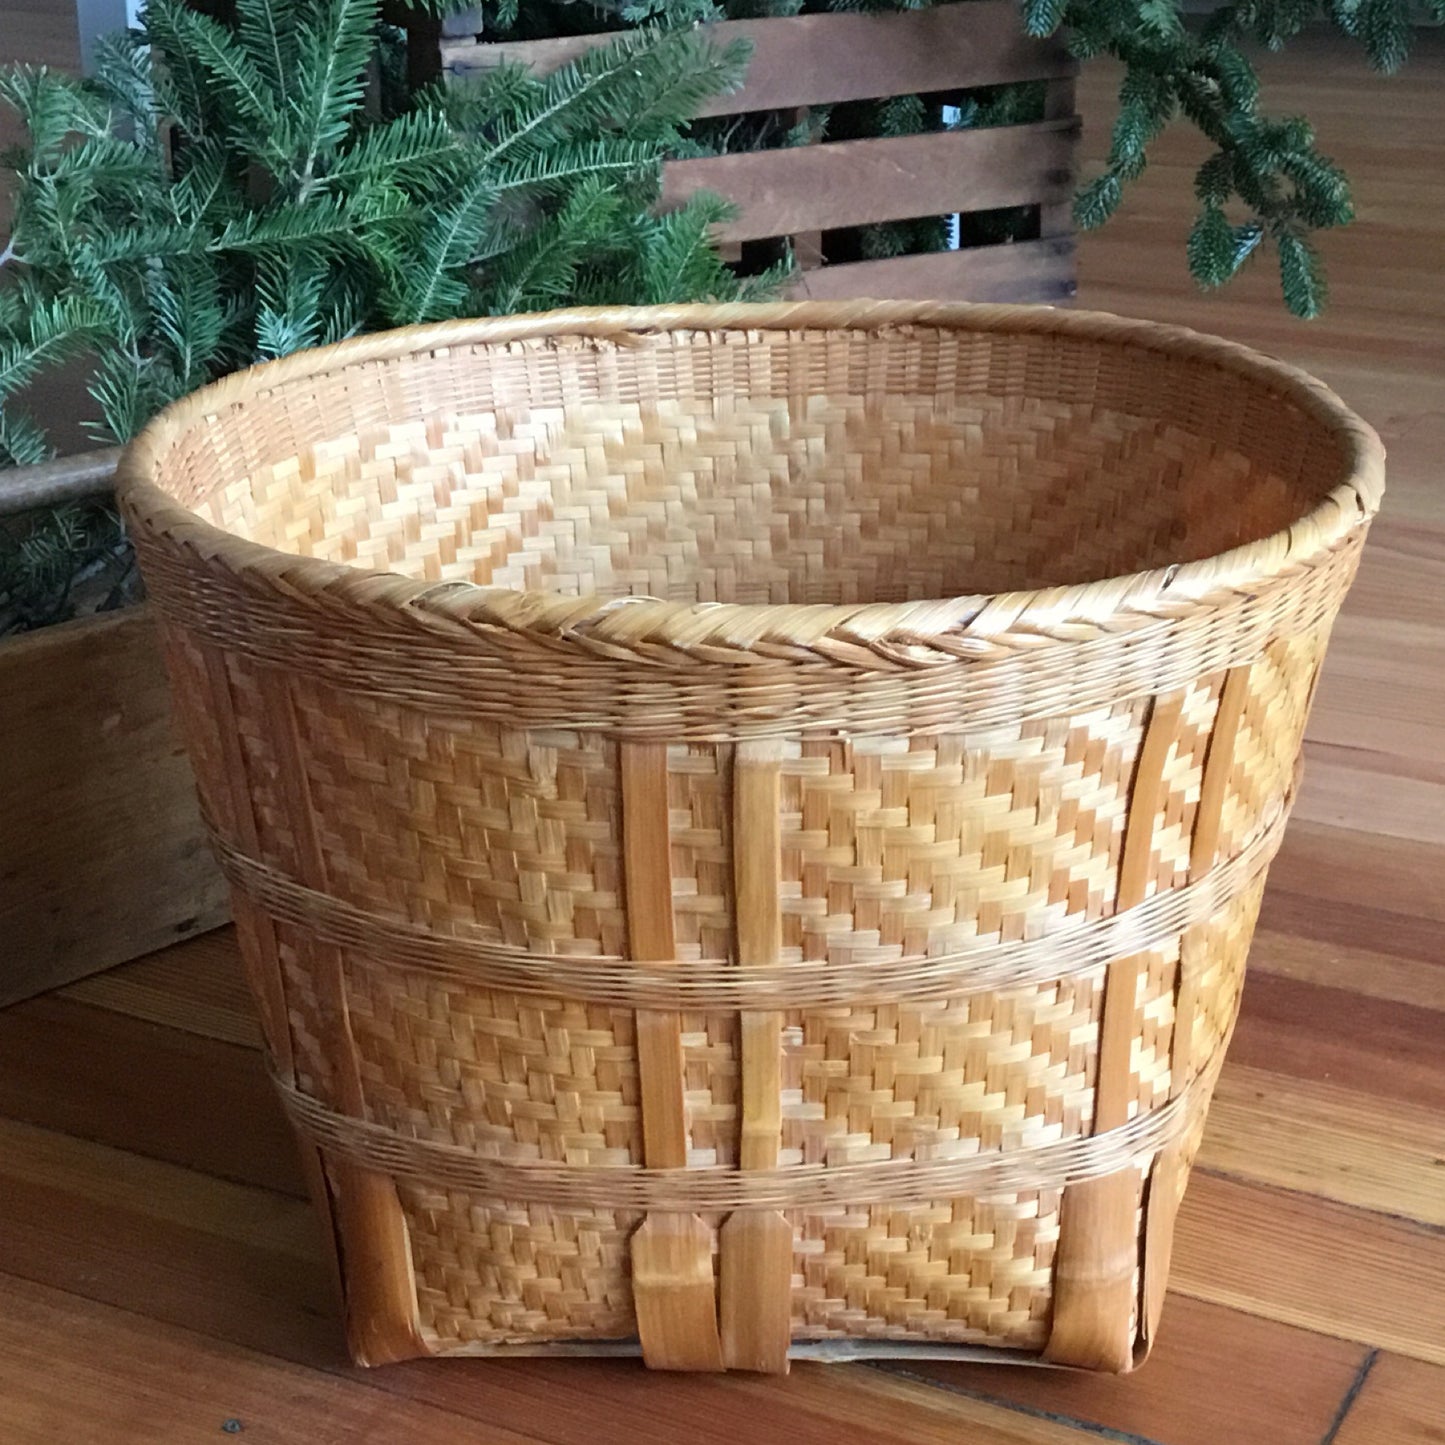 Large Wicker Basket (11" x 15.5")